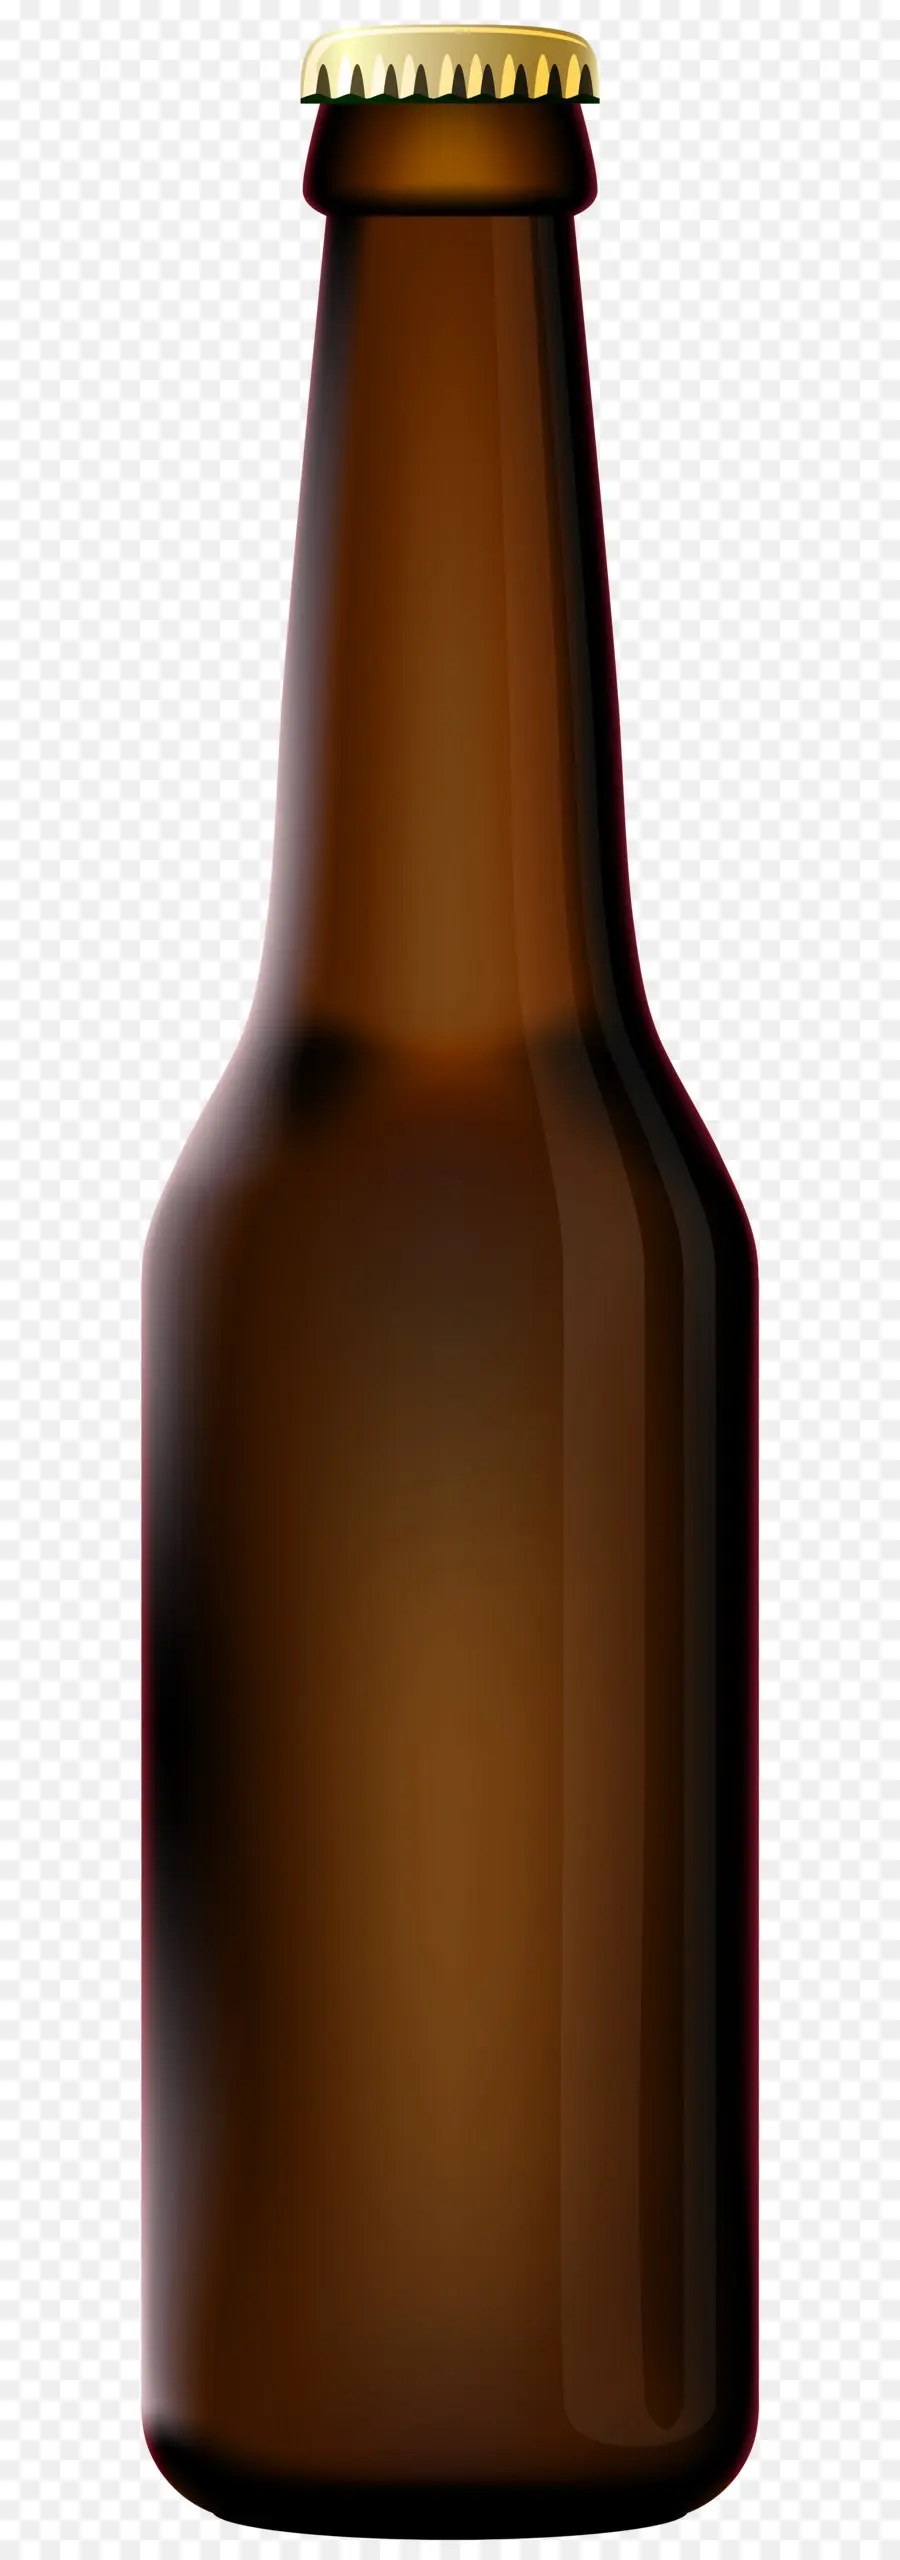 пиво，Циндао пивоварня PNG